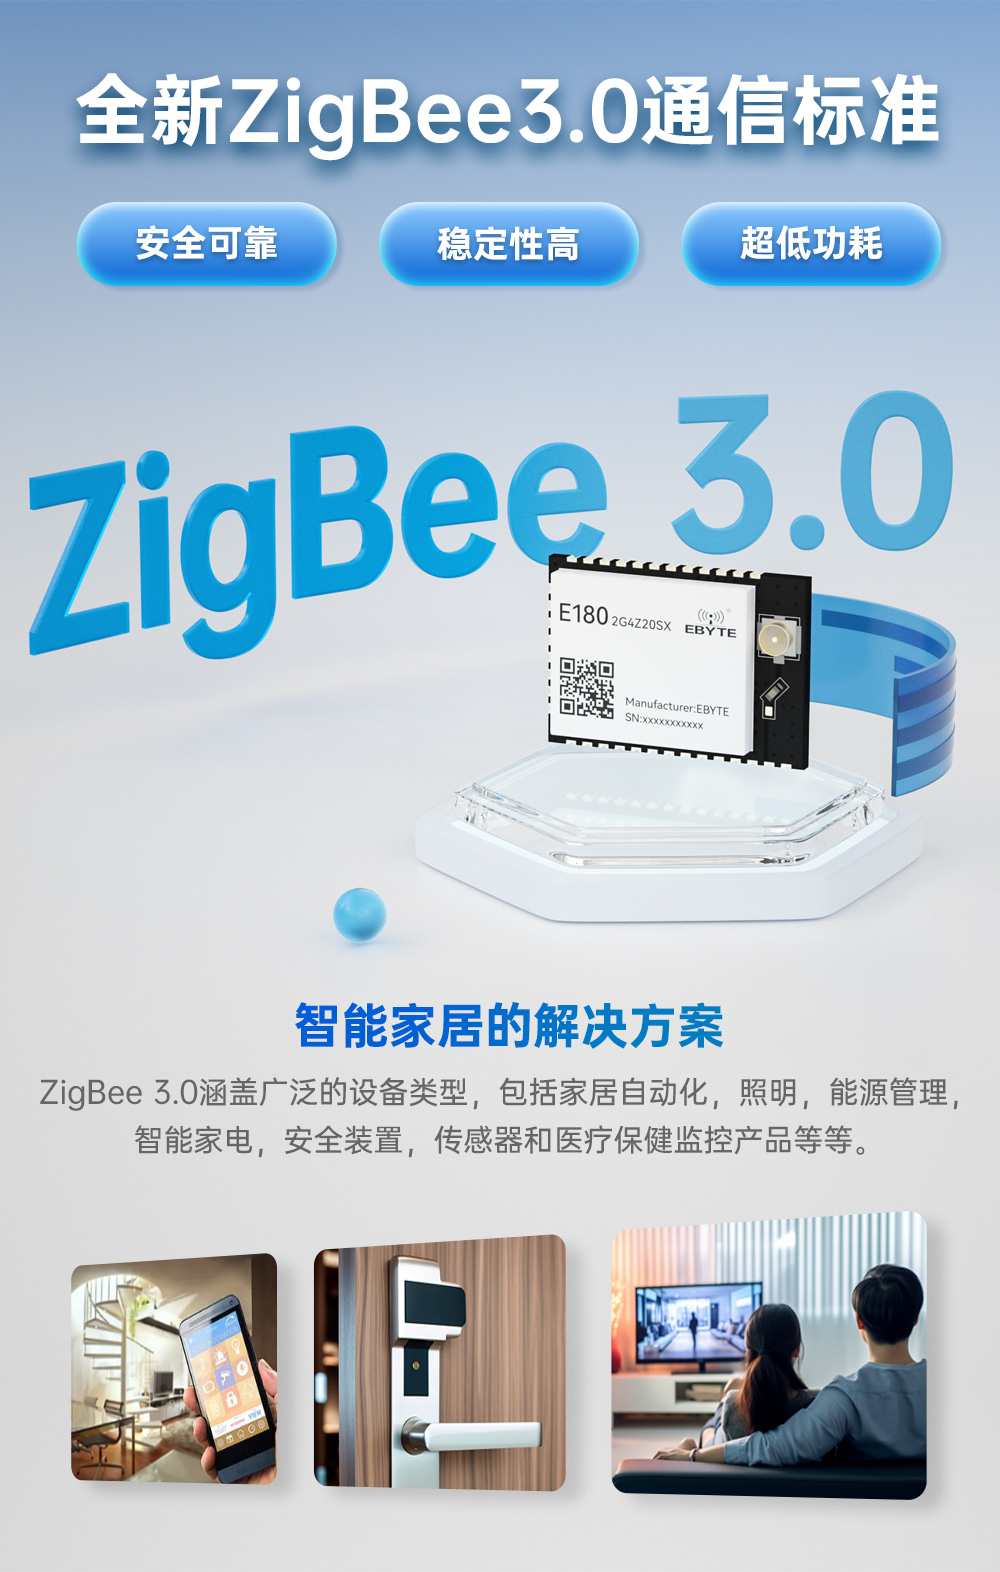 E180-2G4Z20SX-zigbee3.0模块 (4)